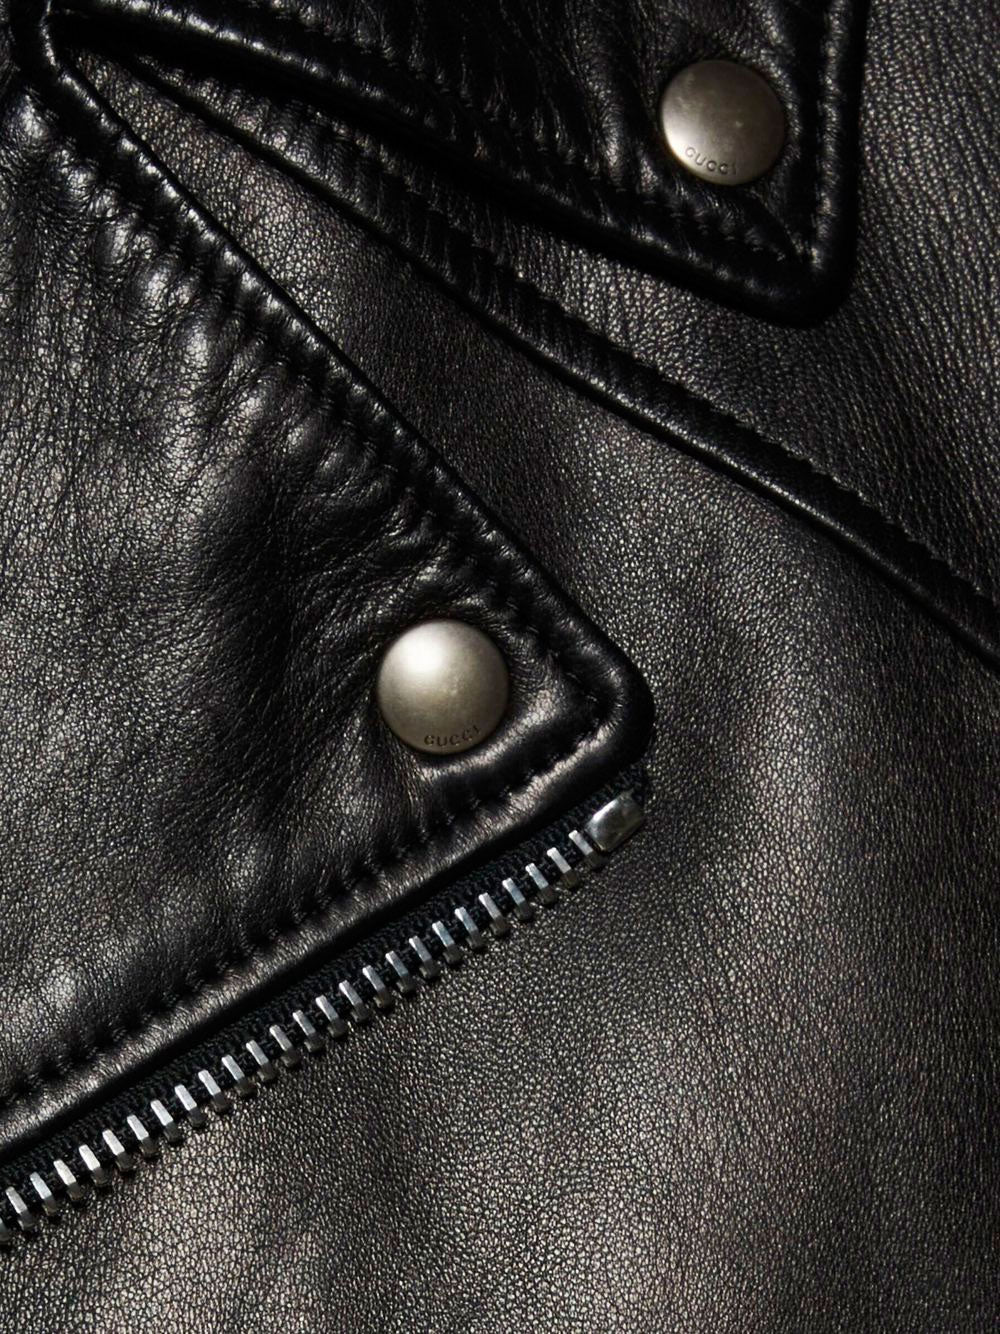 Asymmetrical zip leather jacket